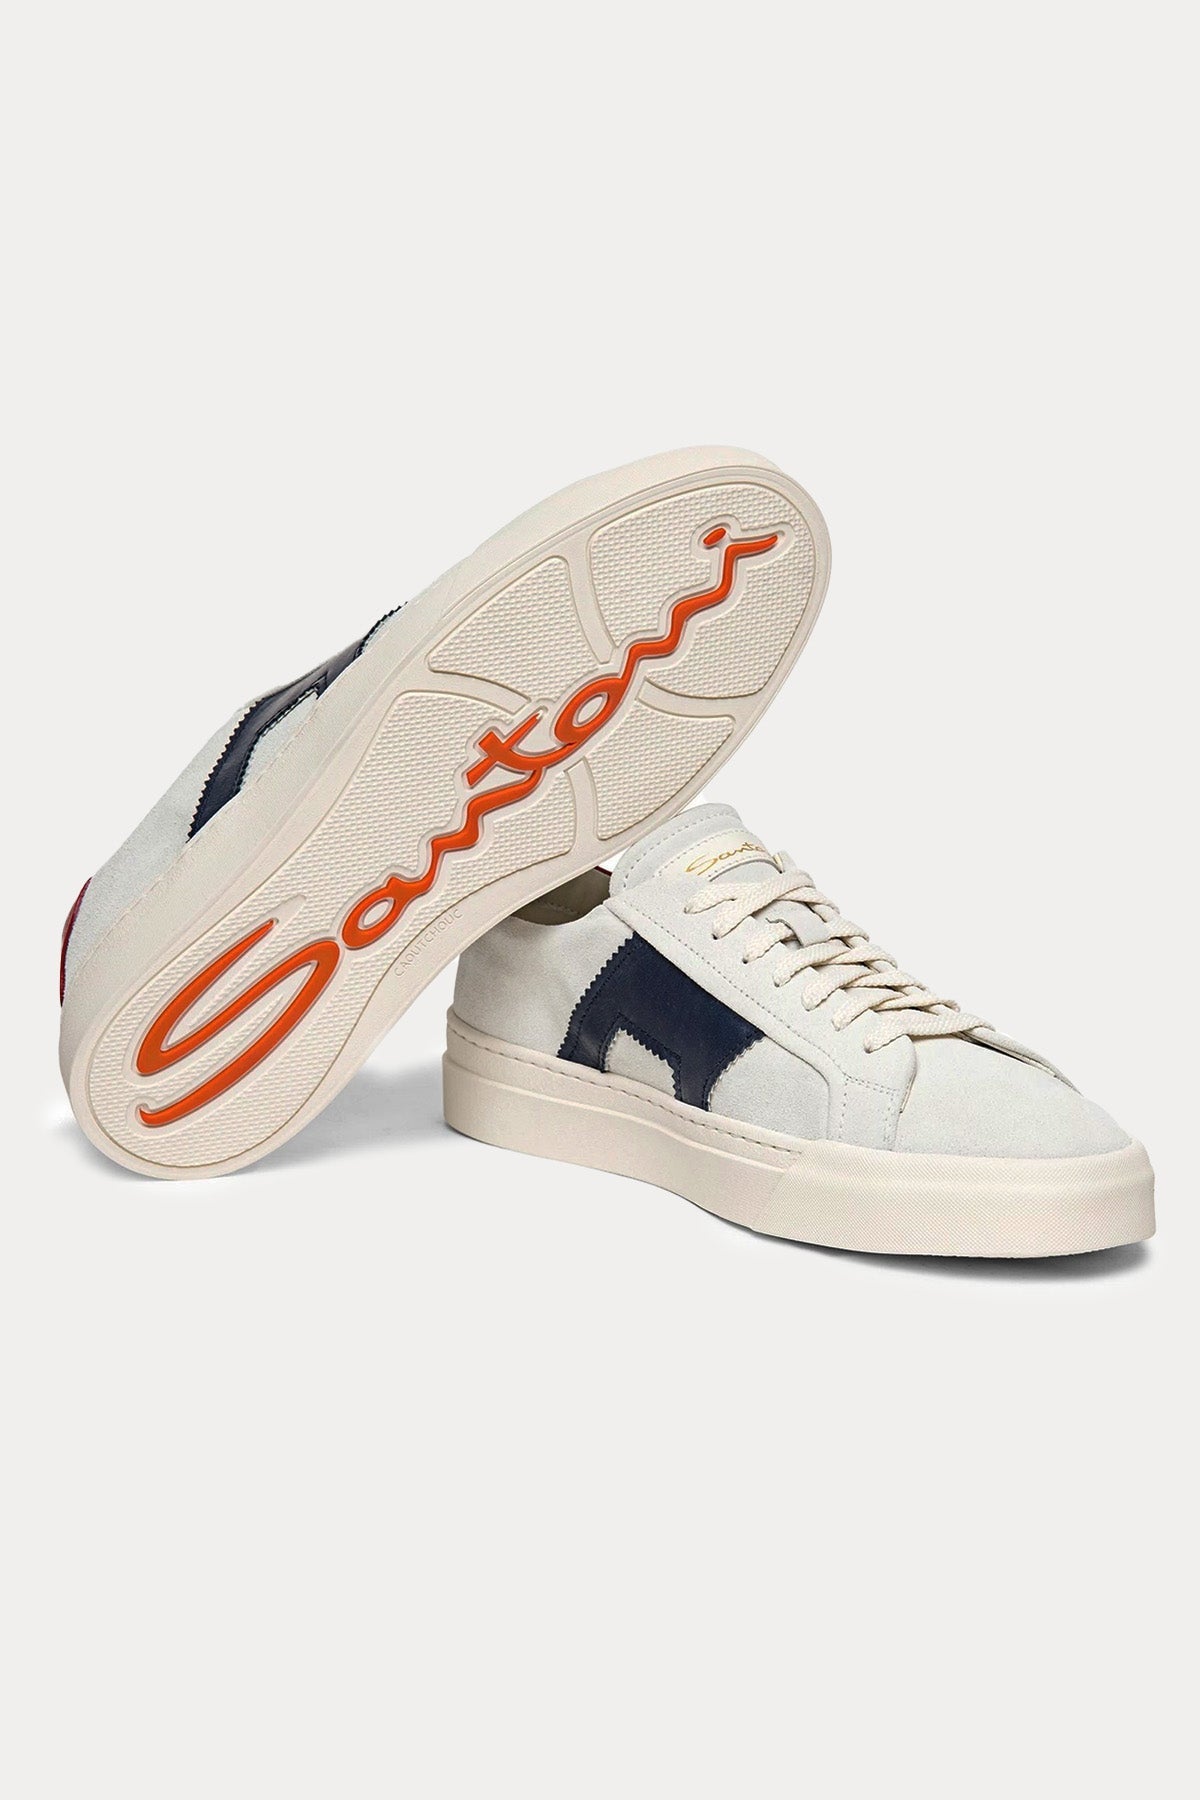 Santoni Double Buckle Süet Sneaker Ayakkabı